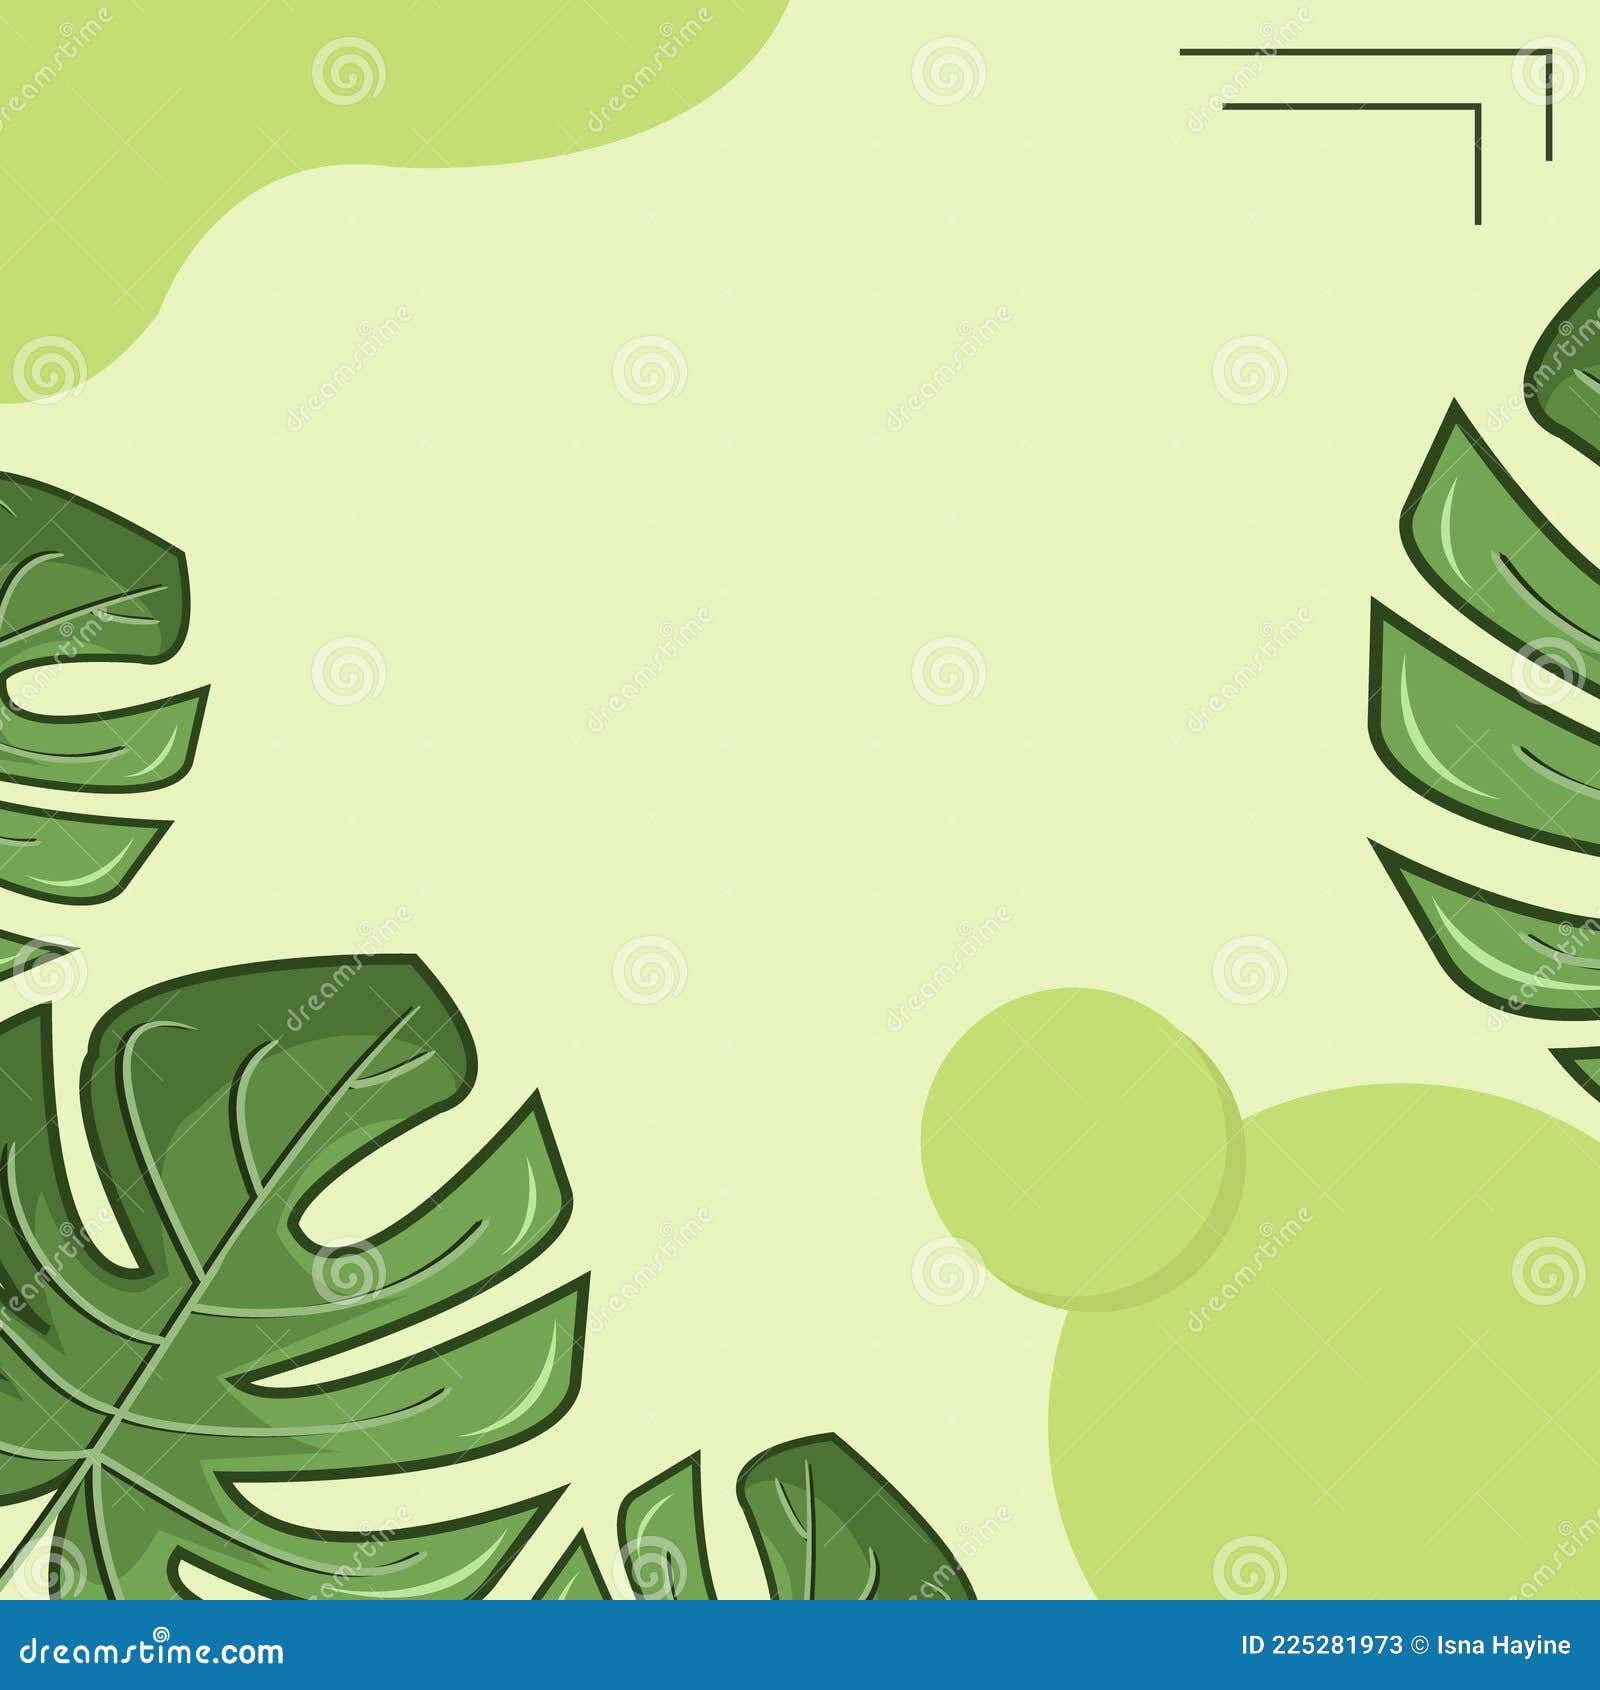 Hình nền lá xanh cây: Hình nền lá xanh cây là lựa chọn hoàn hảo để cập nhật cho thiết bị của bạn. Với hình ảnh minh họa rực rỡ và sống động, bạn sẽ có một không gian sống đầy sức sống và đầy màu sắc. Hãy xem ngay để tăng cường sức sống cho màn hình của bạn!